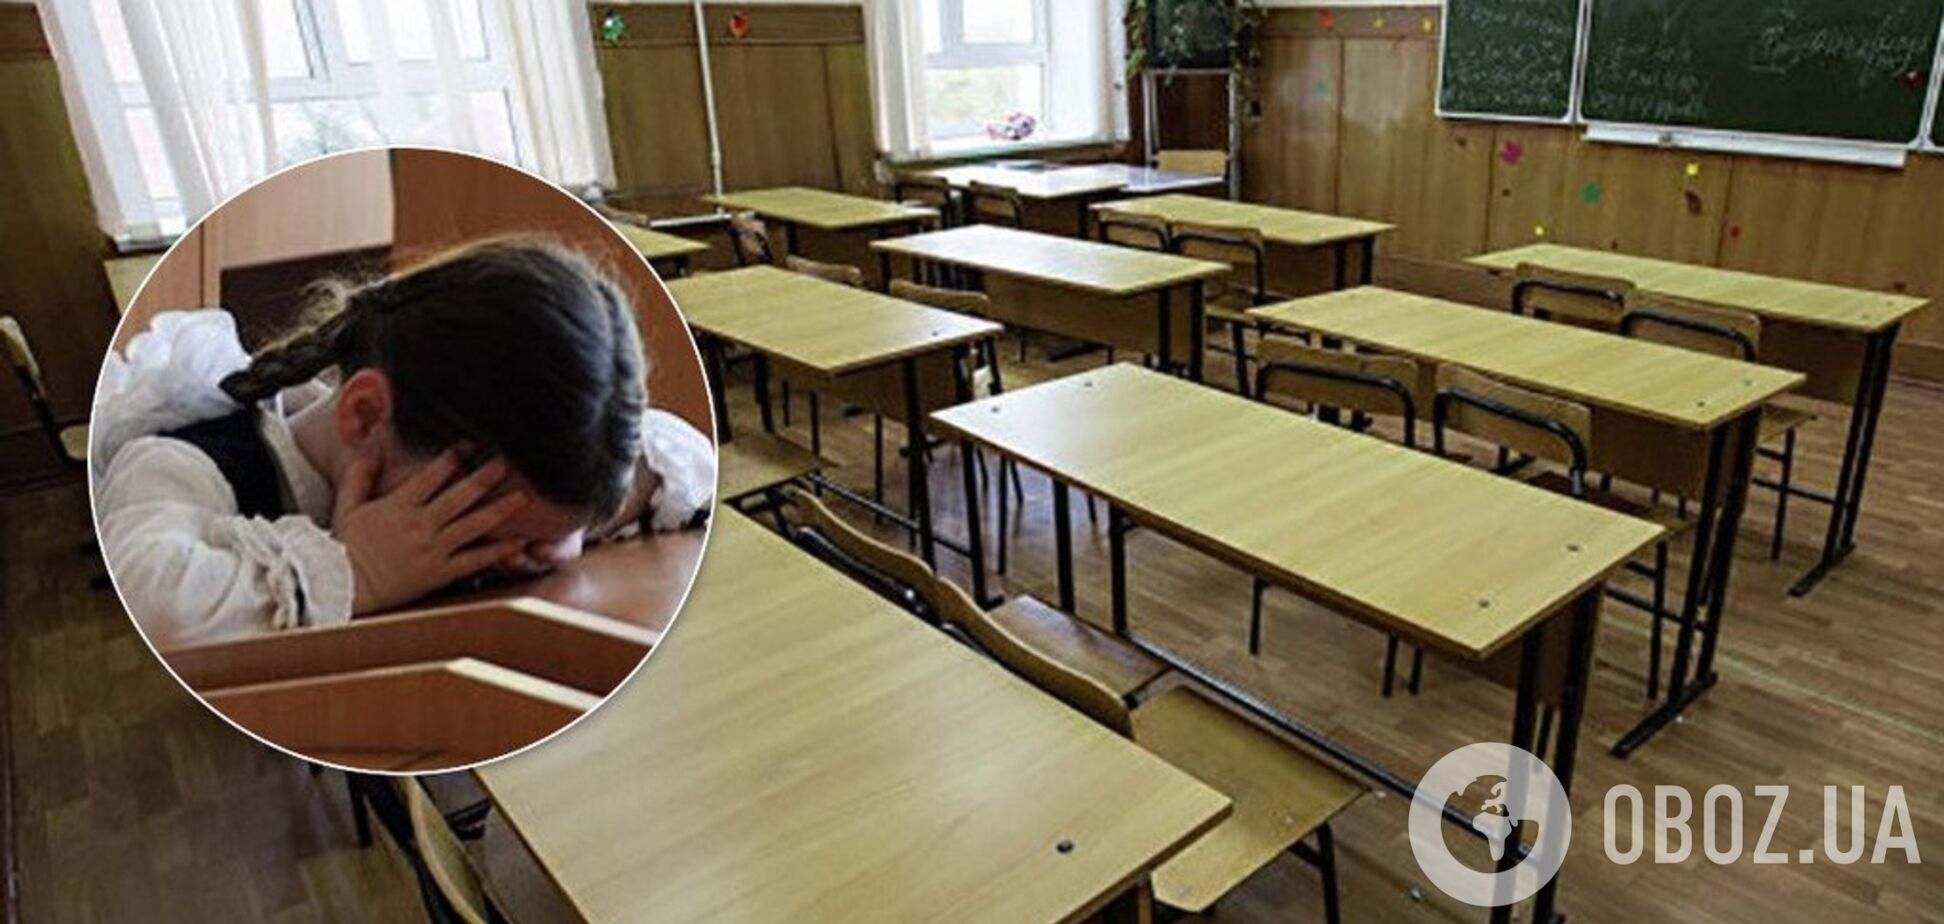 На Тернопольщине пытаются незаконно закрыть школу: разгорелся скандал